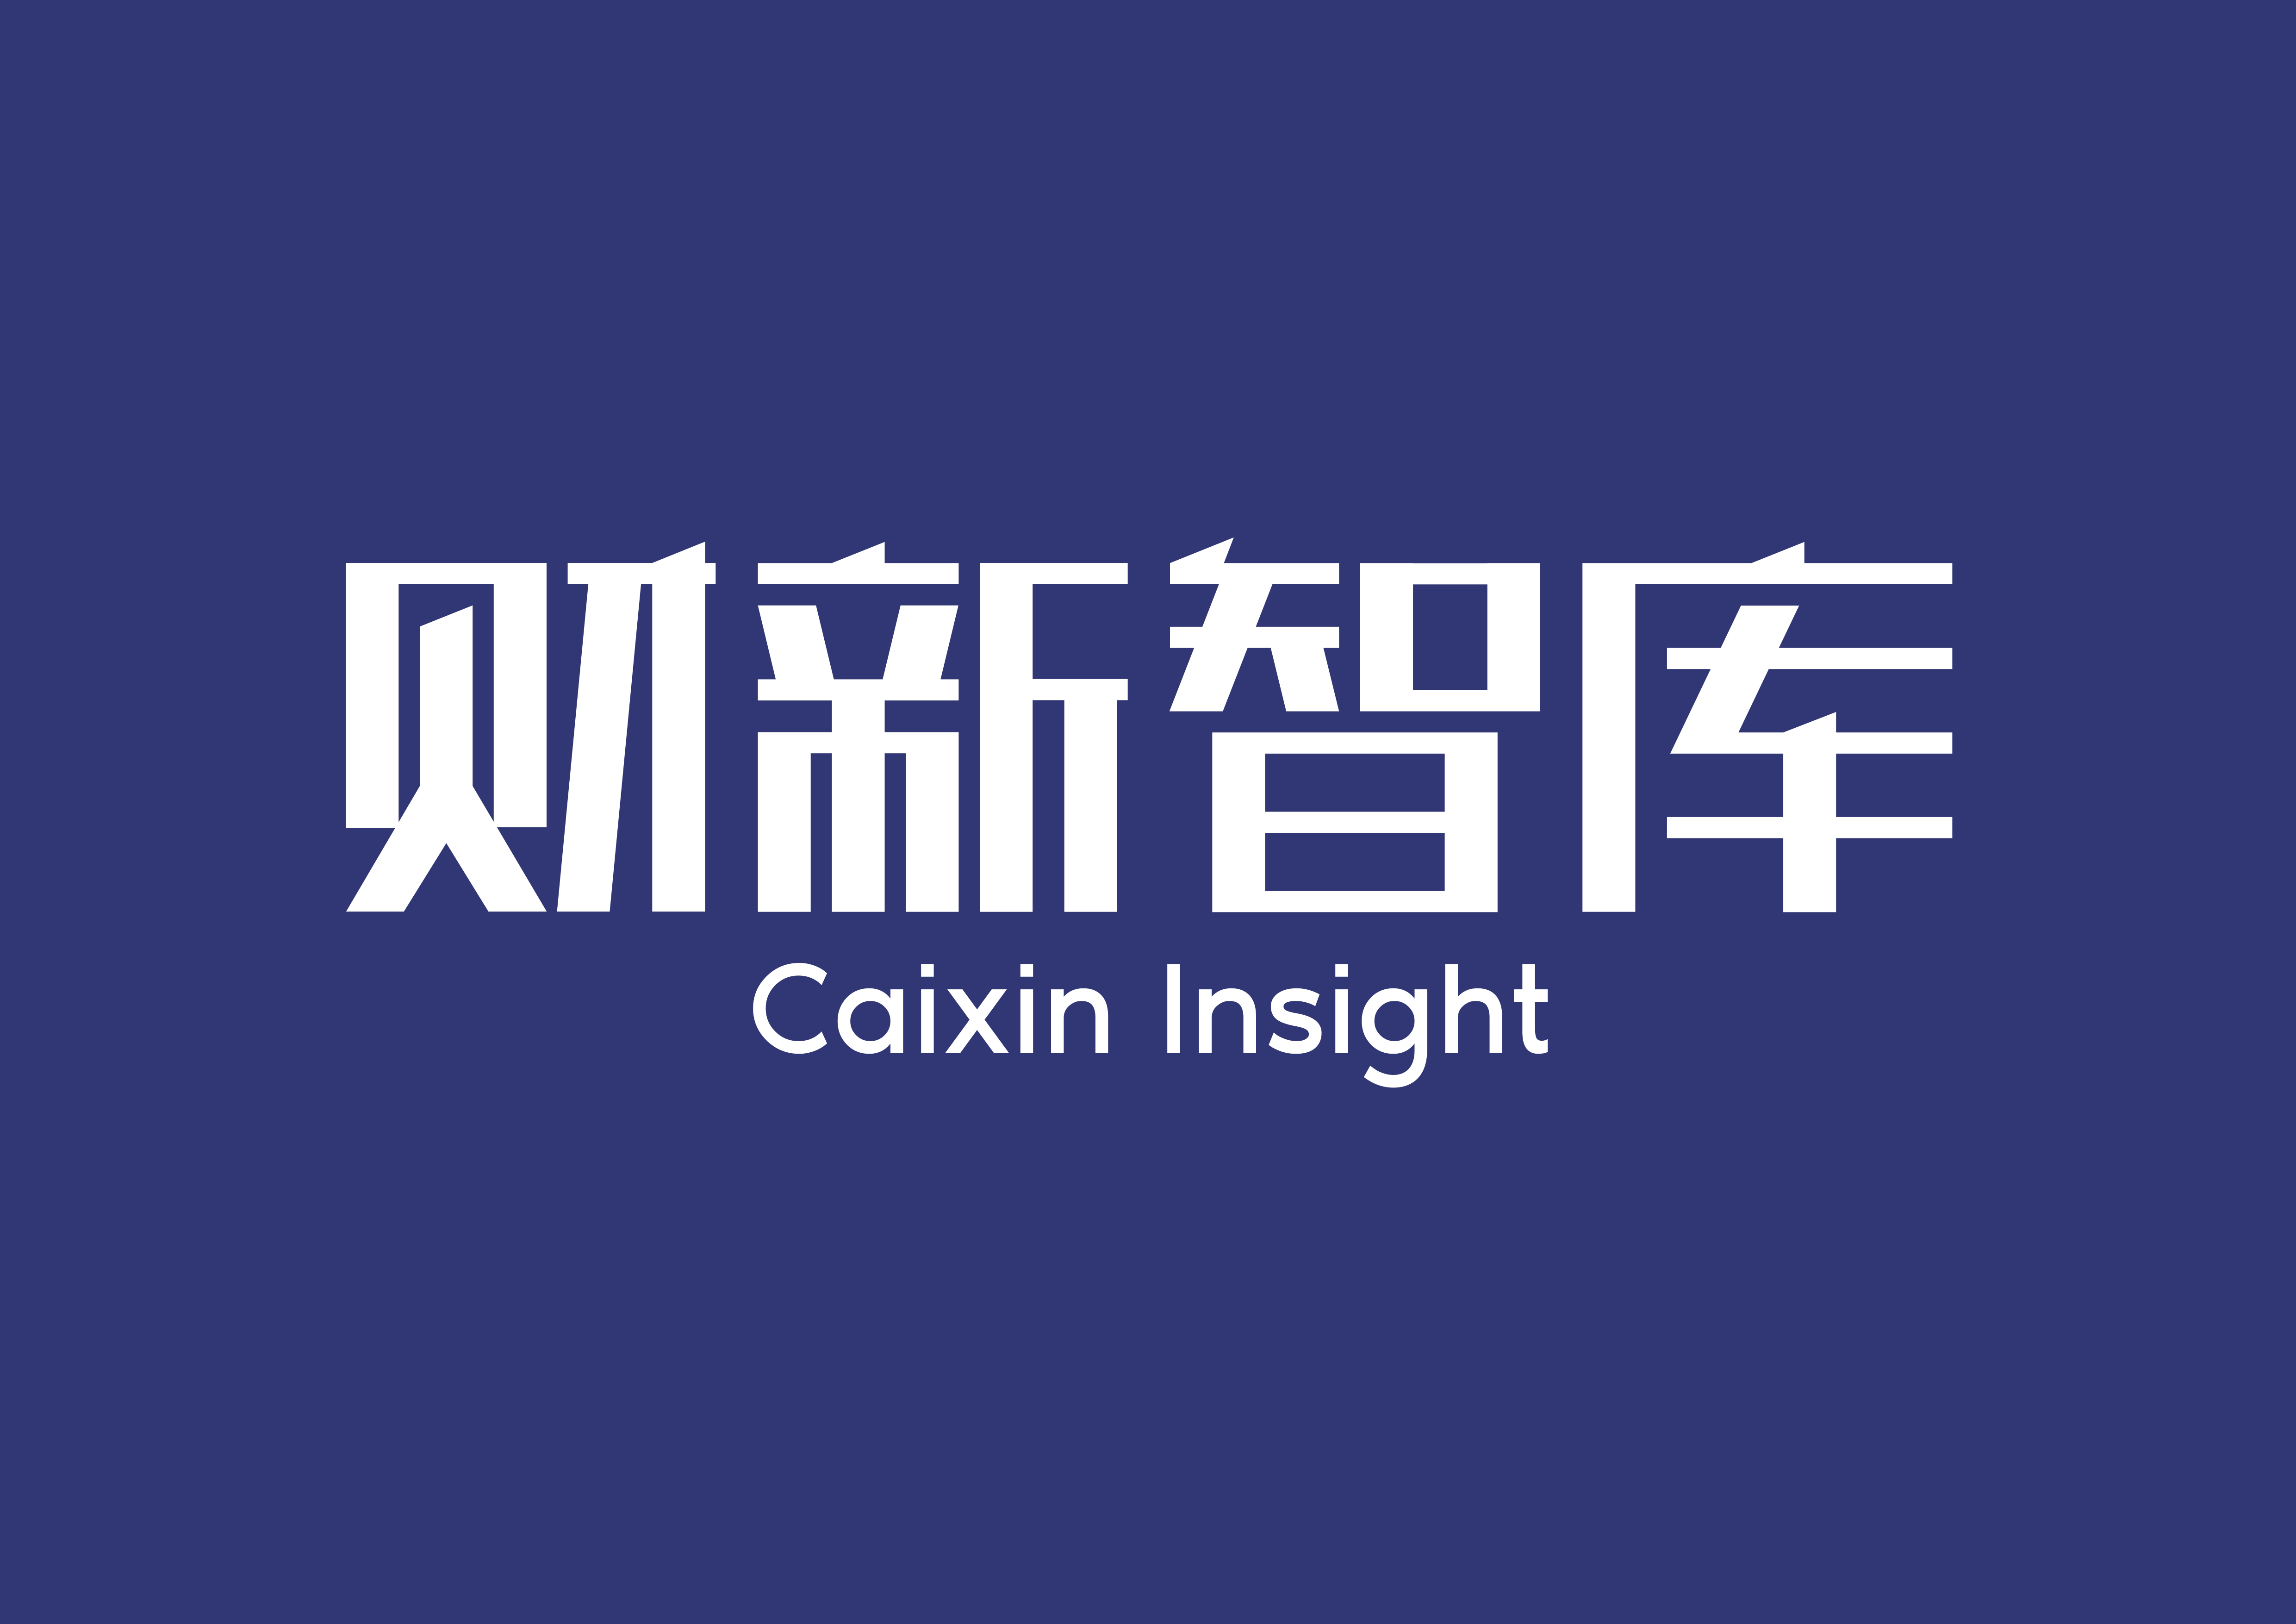 Caixin Insight